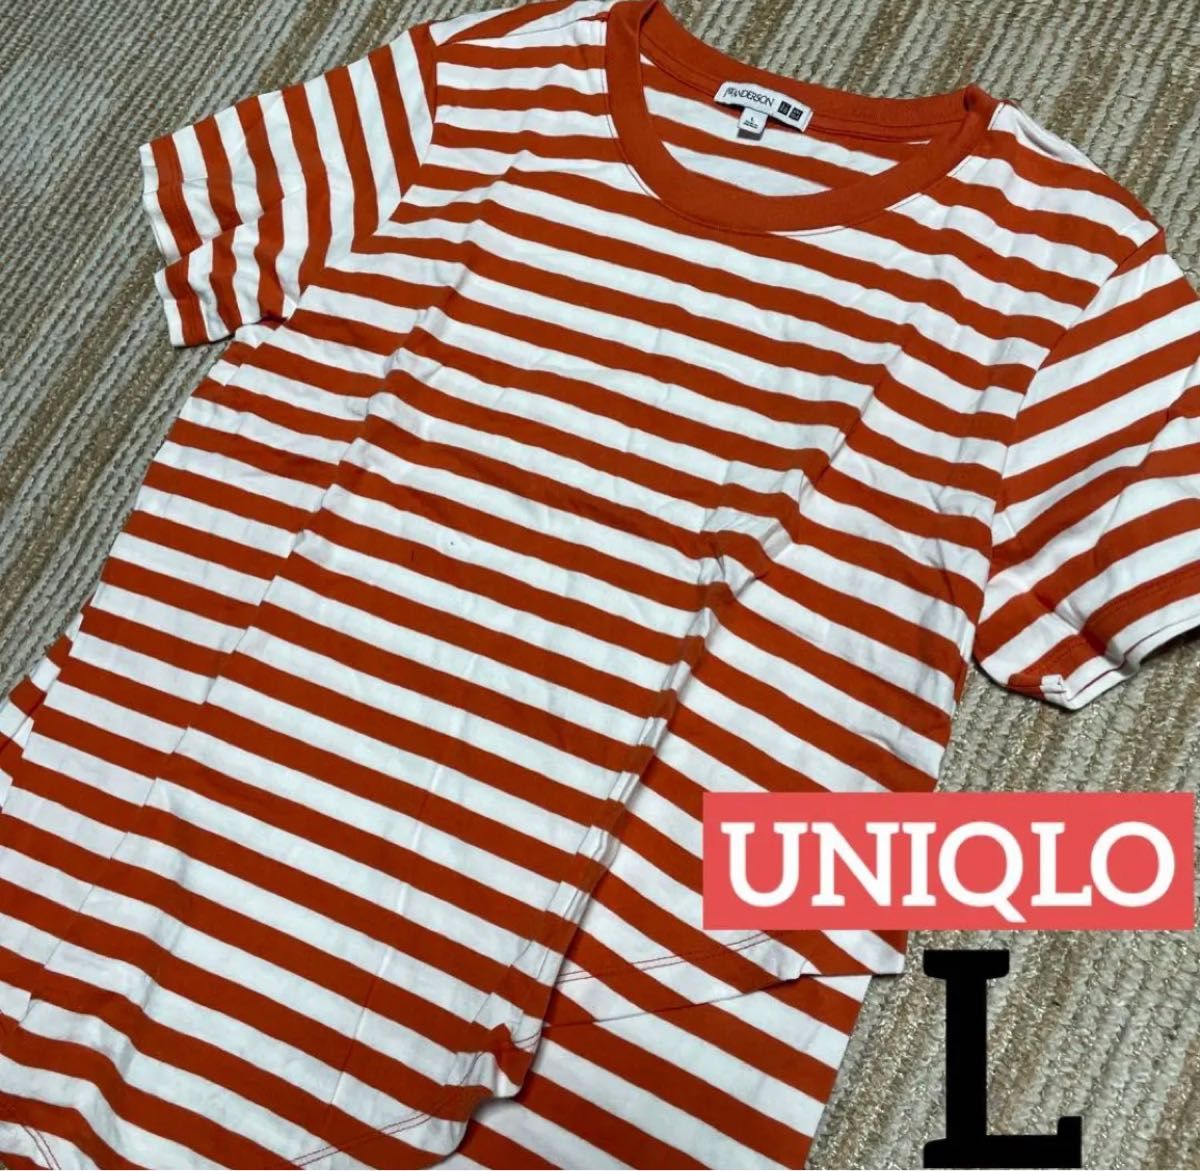 ユニクロ UNIQLO ×JWアンダーソン ボーダーラッフルT 半袖 Lオレンジ ボーダーTシャツ 半袖Tシャツ